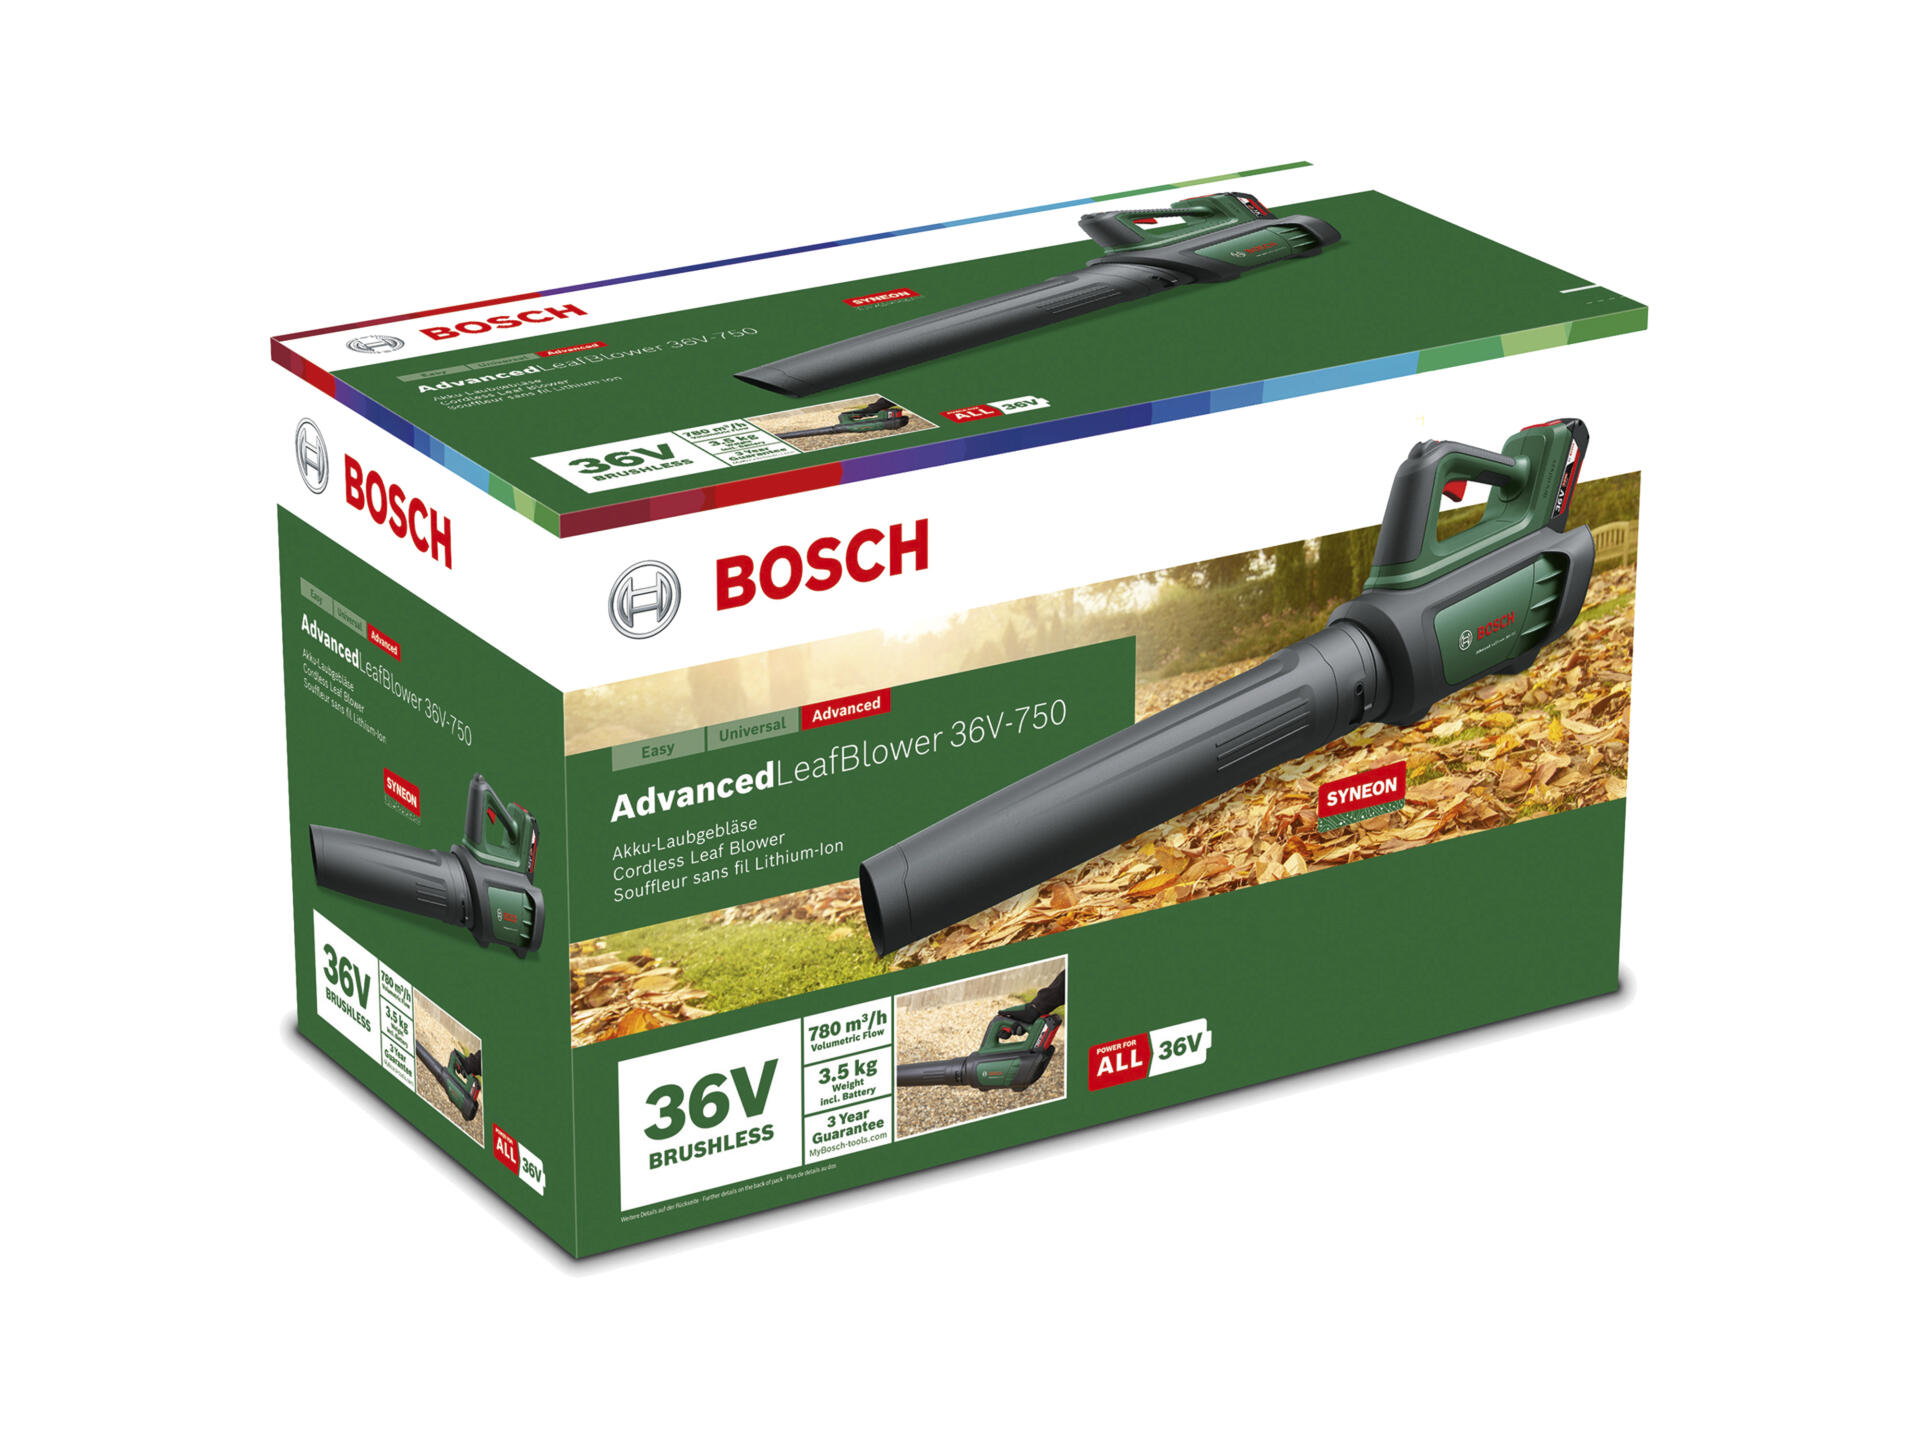 Bosch 36V-750 Advanced Leaf Blower accu bladblazer 36V Li-Ion